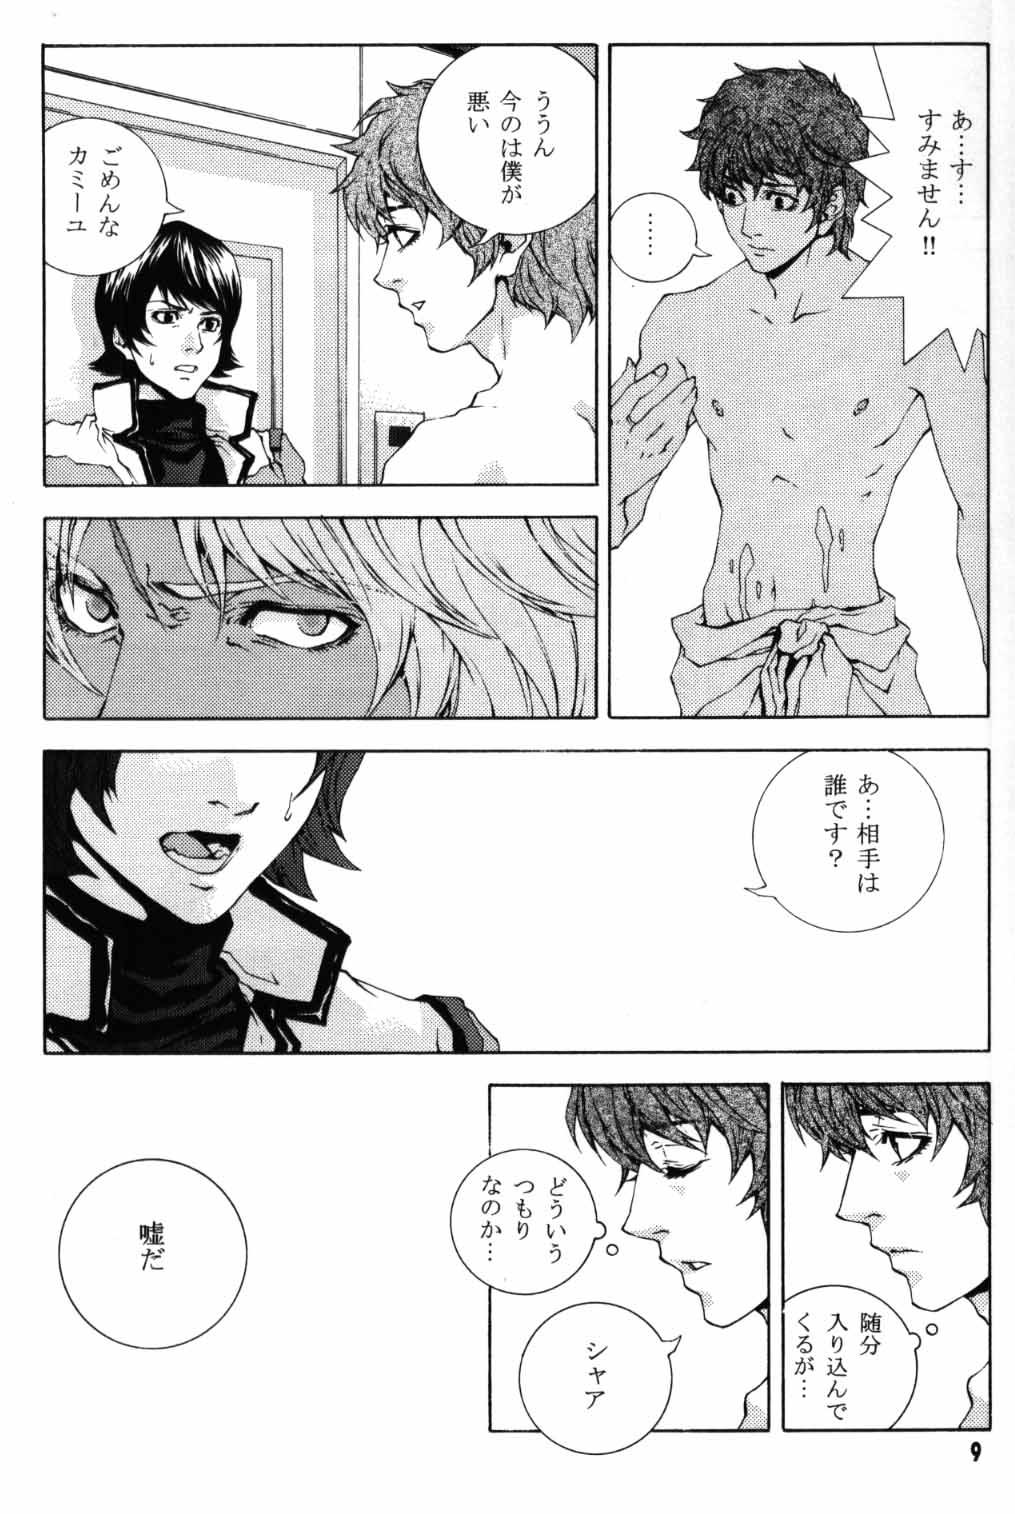 [APART (Yanagisawa Yukio)] Koi no you na Bakemono ga. (Zeta Gundam) page 7 full